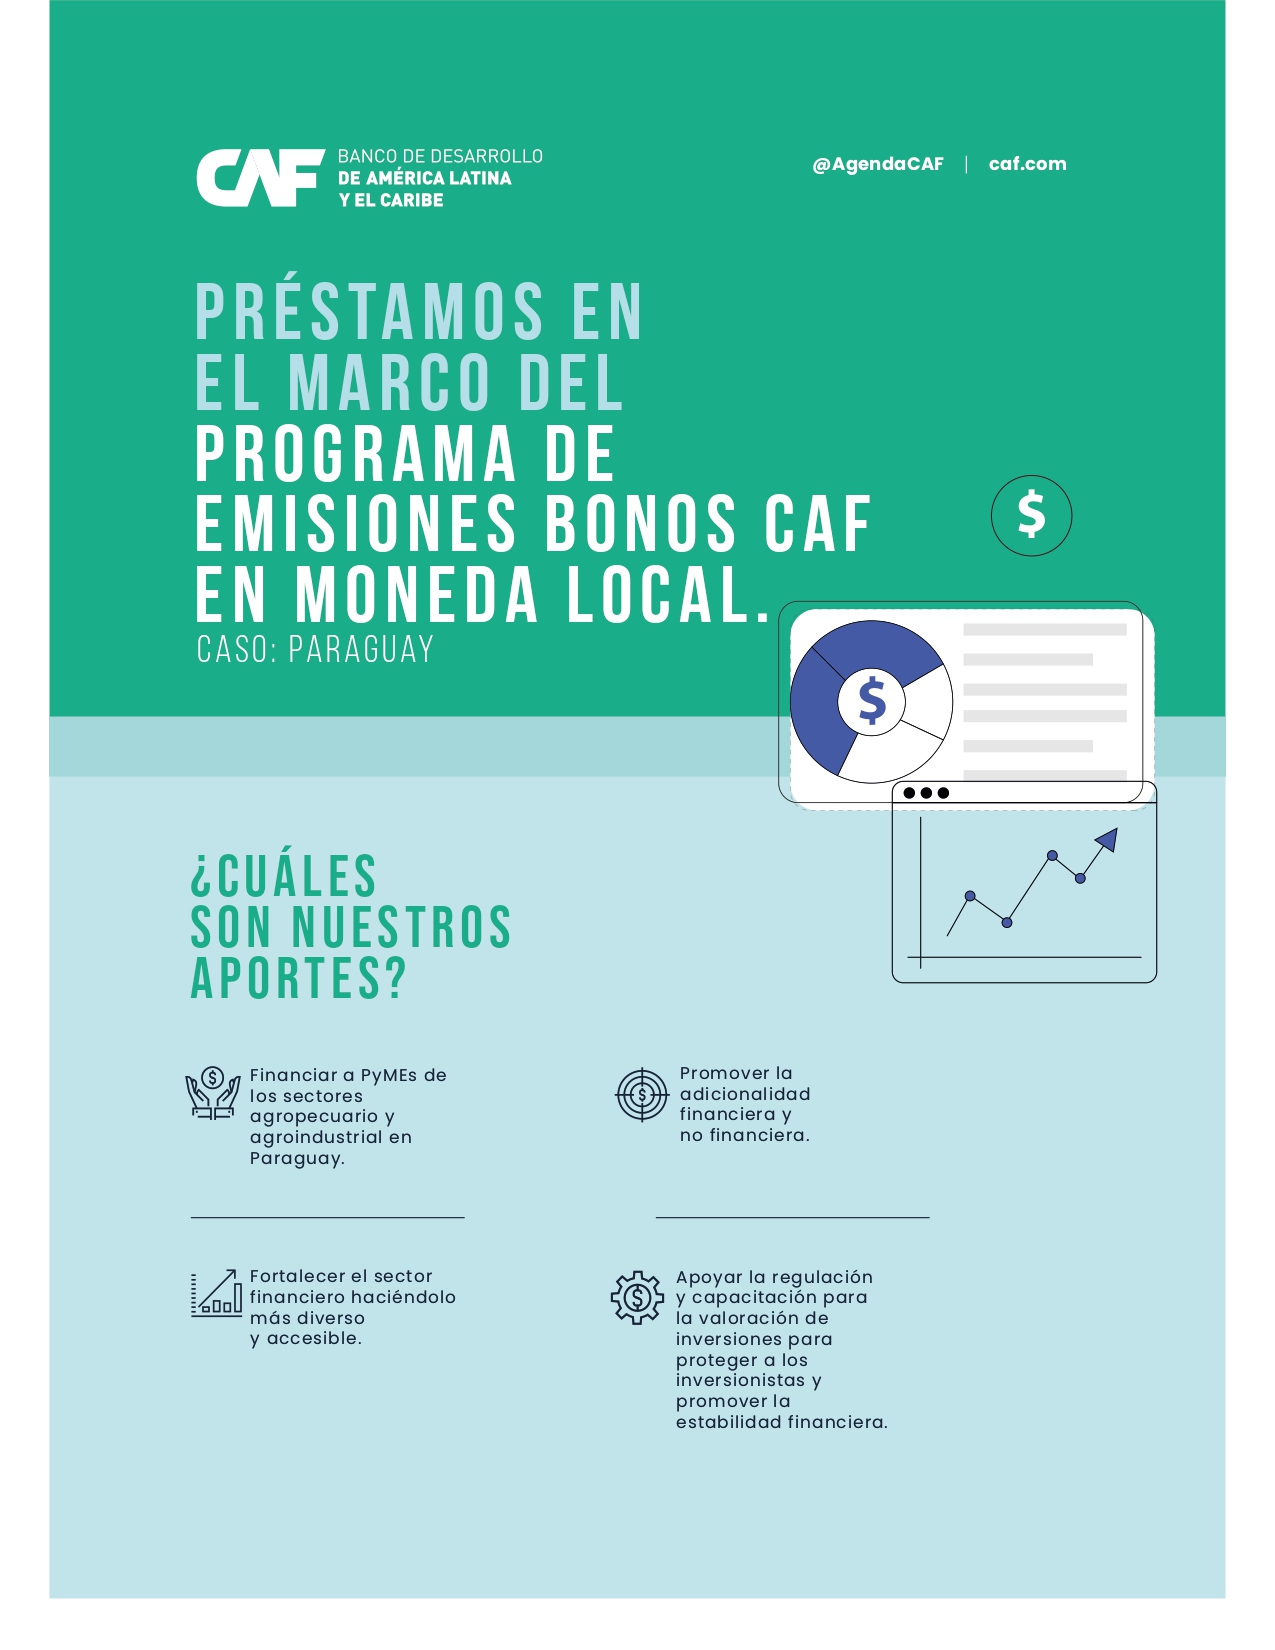 Préstamos en el marco del Programa de Emisiones Bonos CAF en Moneda Local - Caso Paraguay